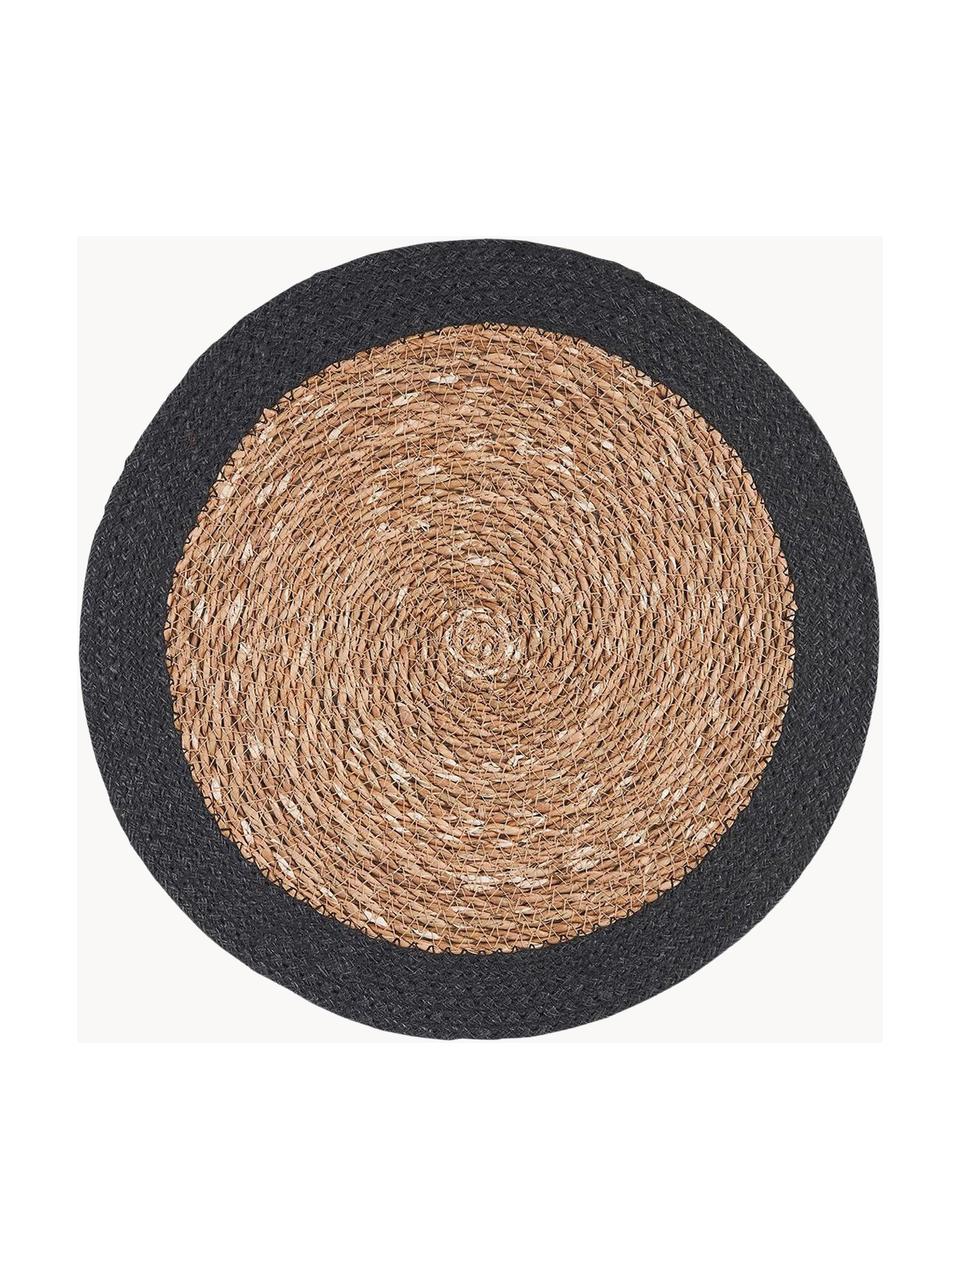 Okrągła podkładka z trawy morskiej Sauvage, 2 szt., Trawa morska, juta, Beżowy, czarny, Ø 38 cm